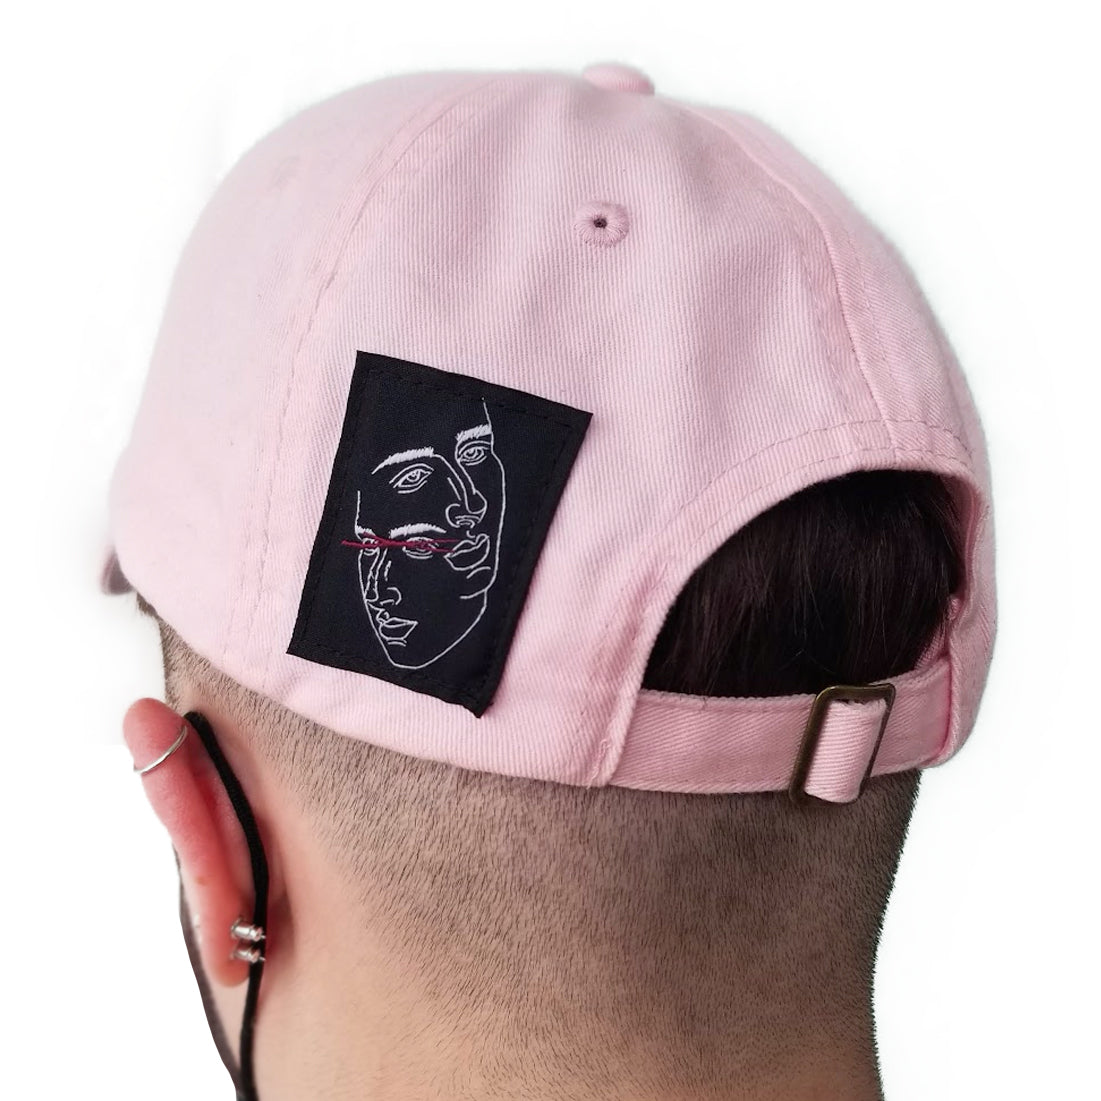 Fake Trans Cap in Pink